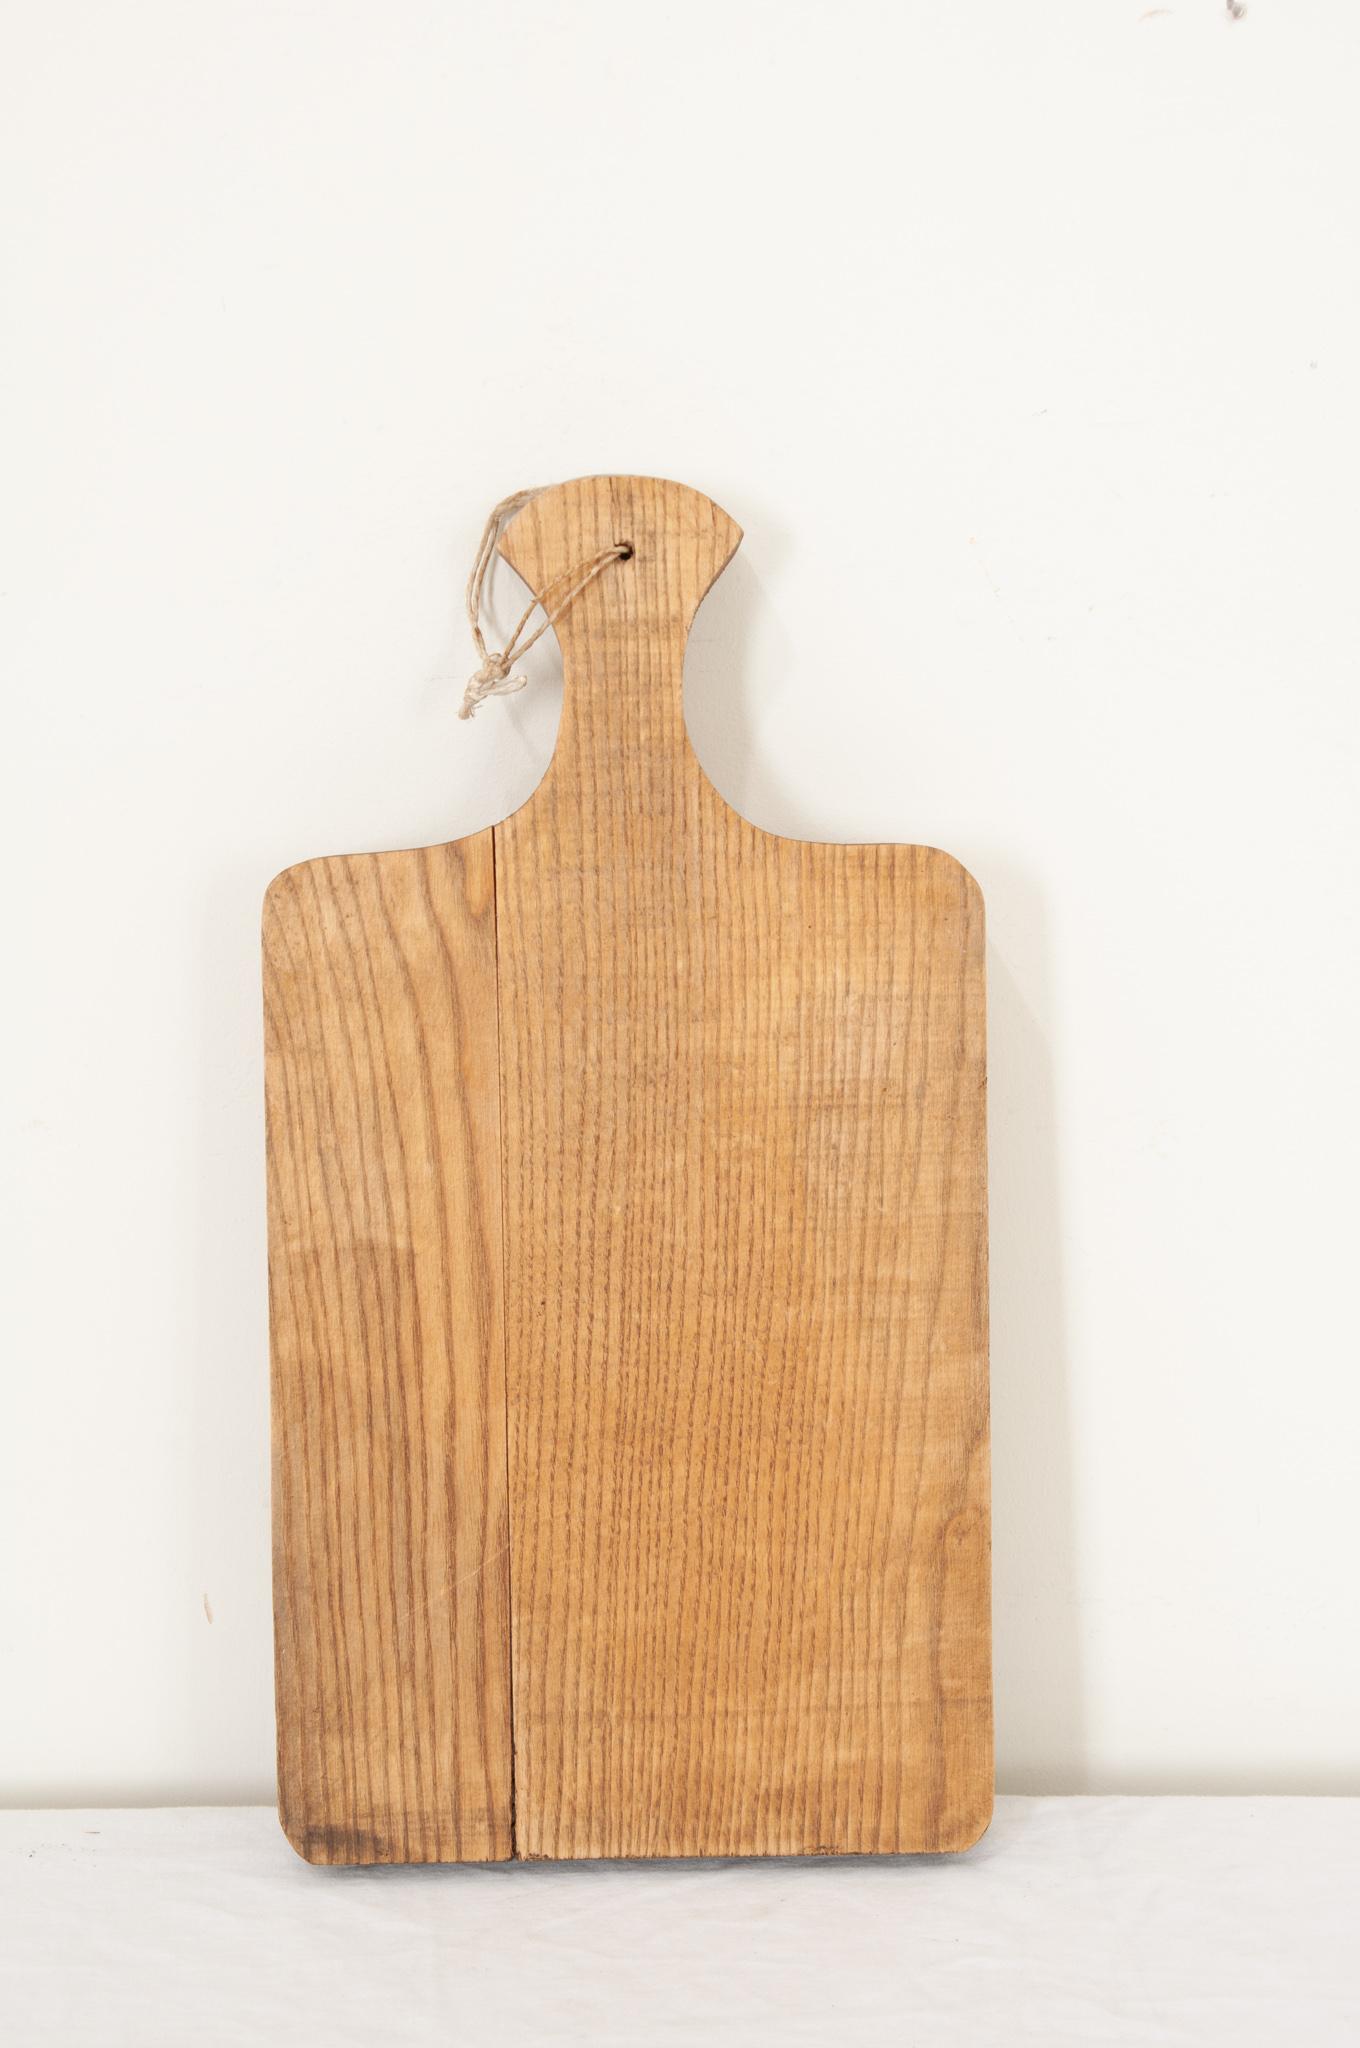 Ein großes einteiliges Holzschneidebrett aus Frankreich in Paddelform mit glatten Ecken und einem Griff mit der Möglichkeit, es an die Wand zu hängen. Das Holz hat eine schöne Patina und wunderschöne Maserungen. Messerabdrücke und Kratzer, die von